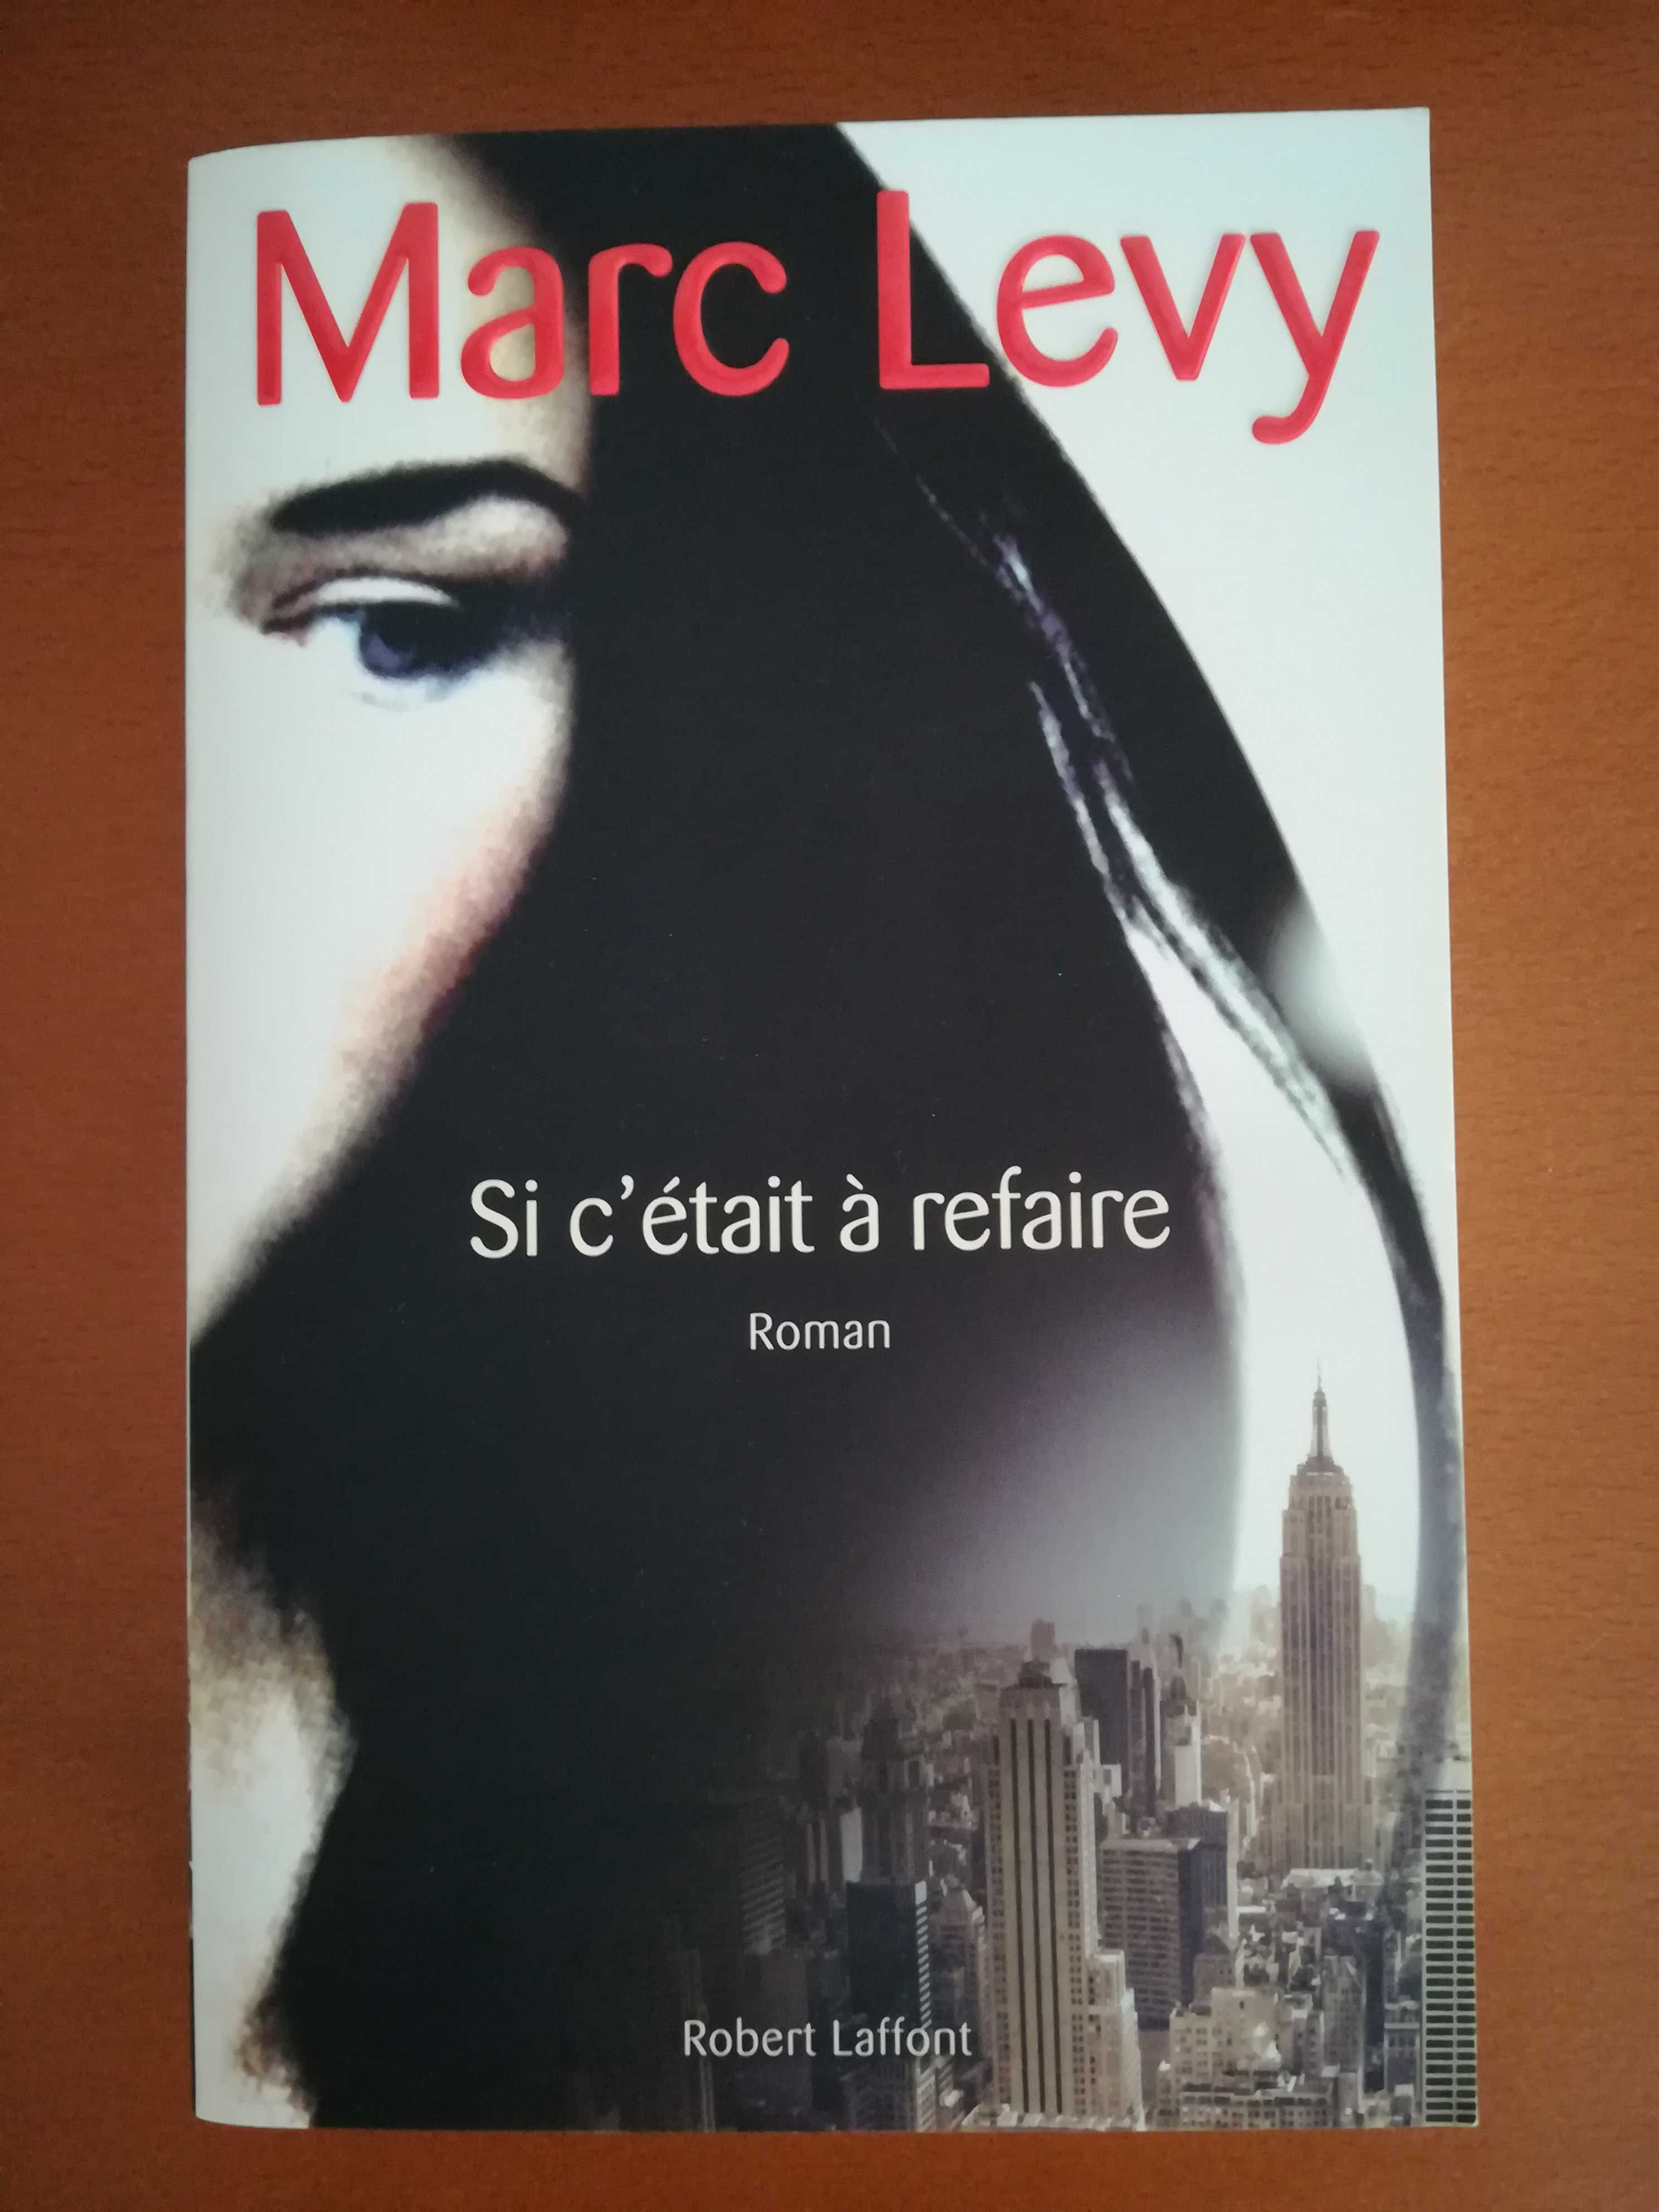 Livro "Si c'était à refaire" de Marc Levy